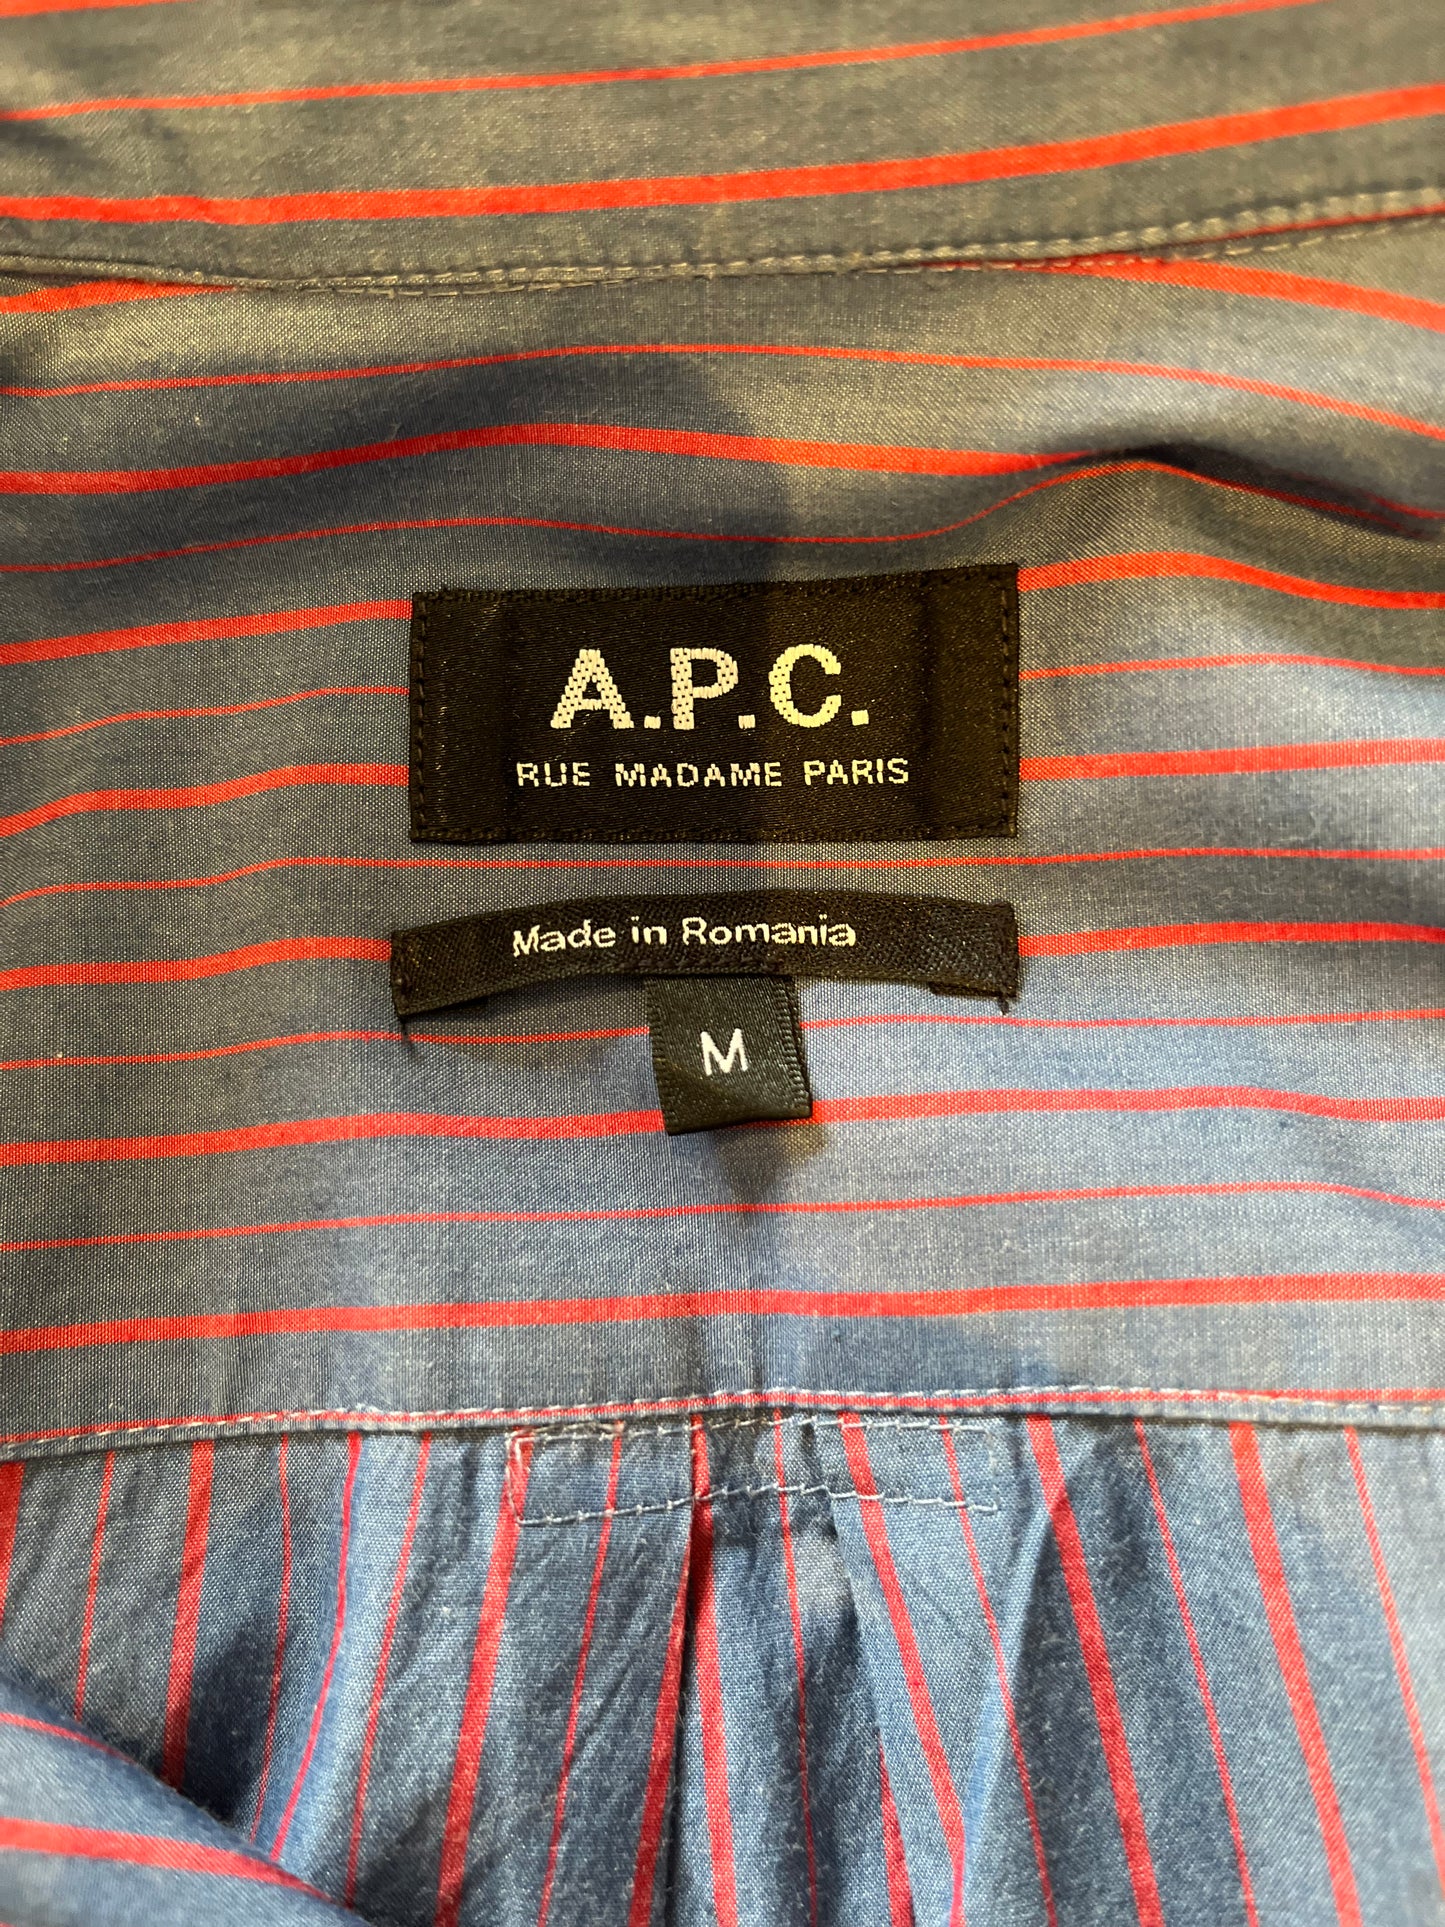 A.P.C. APC 100% Cotton Blue Red Stripe Shirt Size Large Chest Pocket